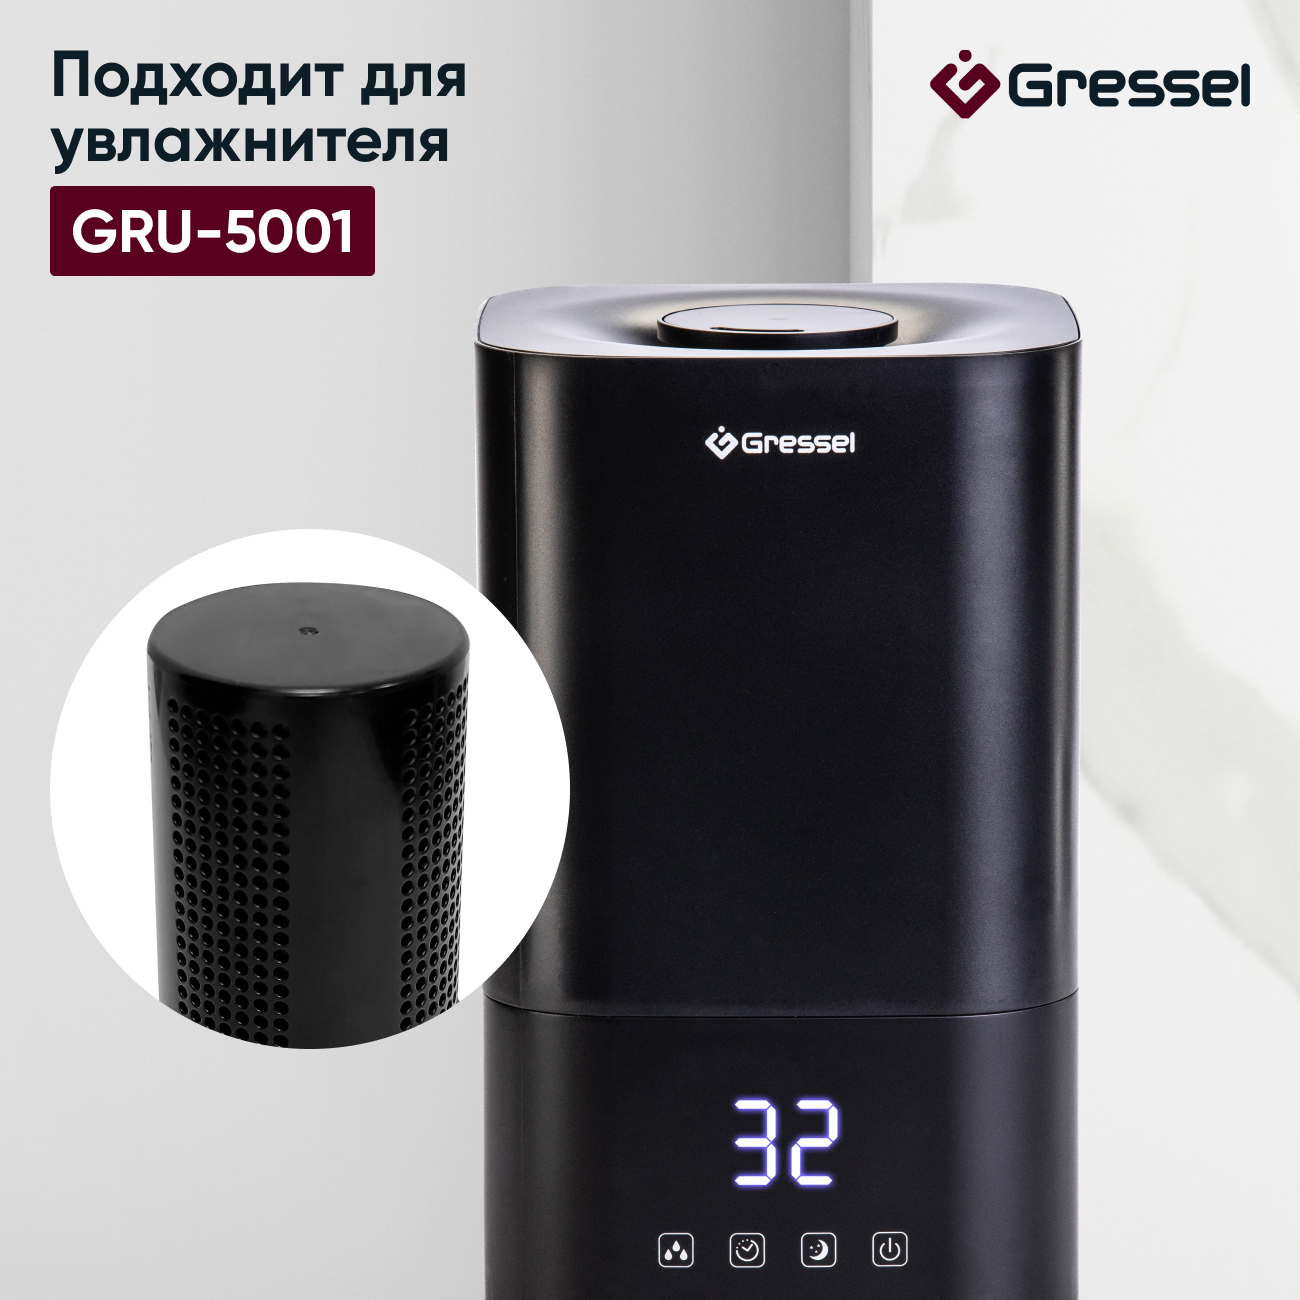 Фильтр увлажнителя воздуха Gressel G-5001 для модели GRU-5001 фильтр для увлажнителя и очистителя 096139